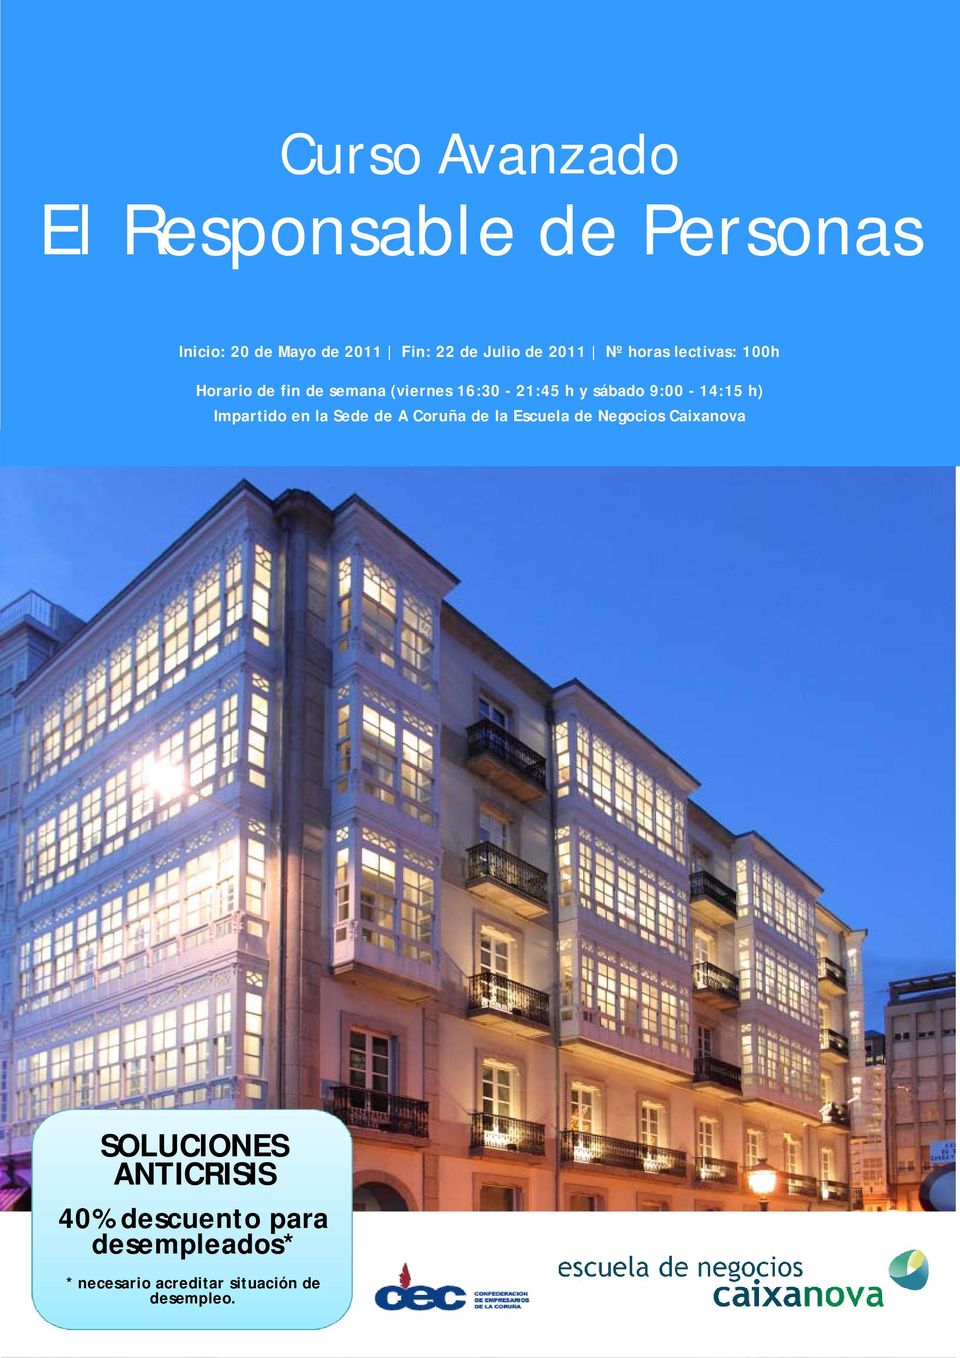 9:00-14:15 h) Impartido en la Sede de A Coruña de la Escuela de Negocios Caixanova